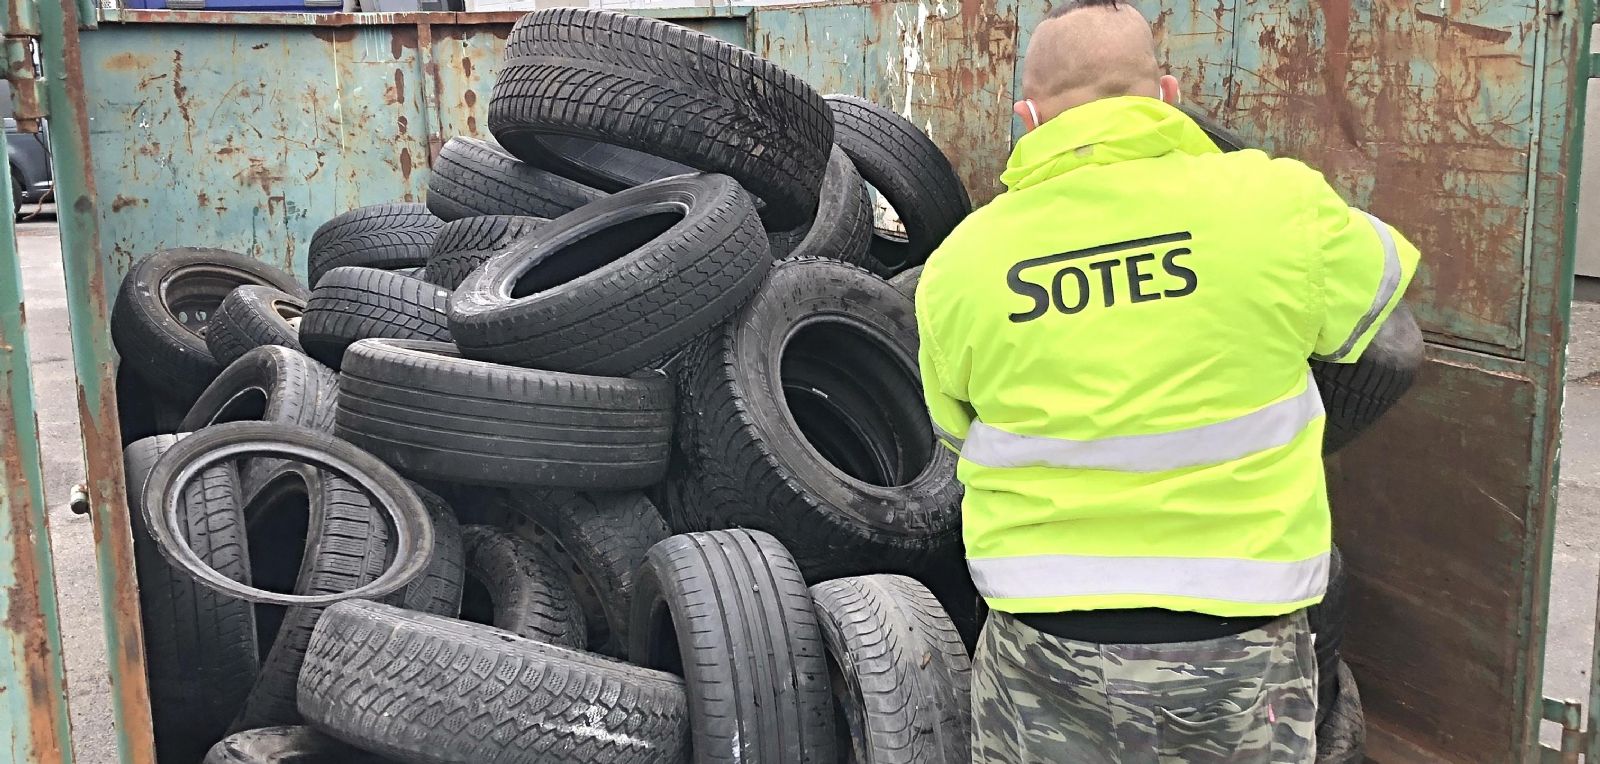 Sokolov: Neodhazujte pneumatiky po městě. Lze je odevzdat